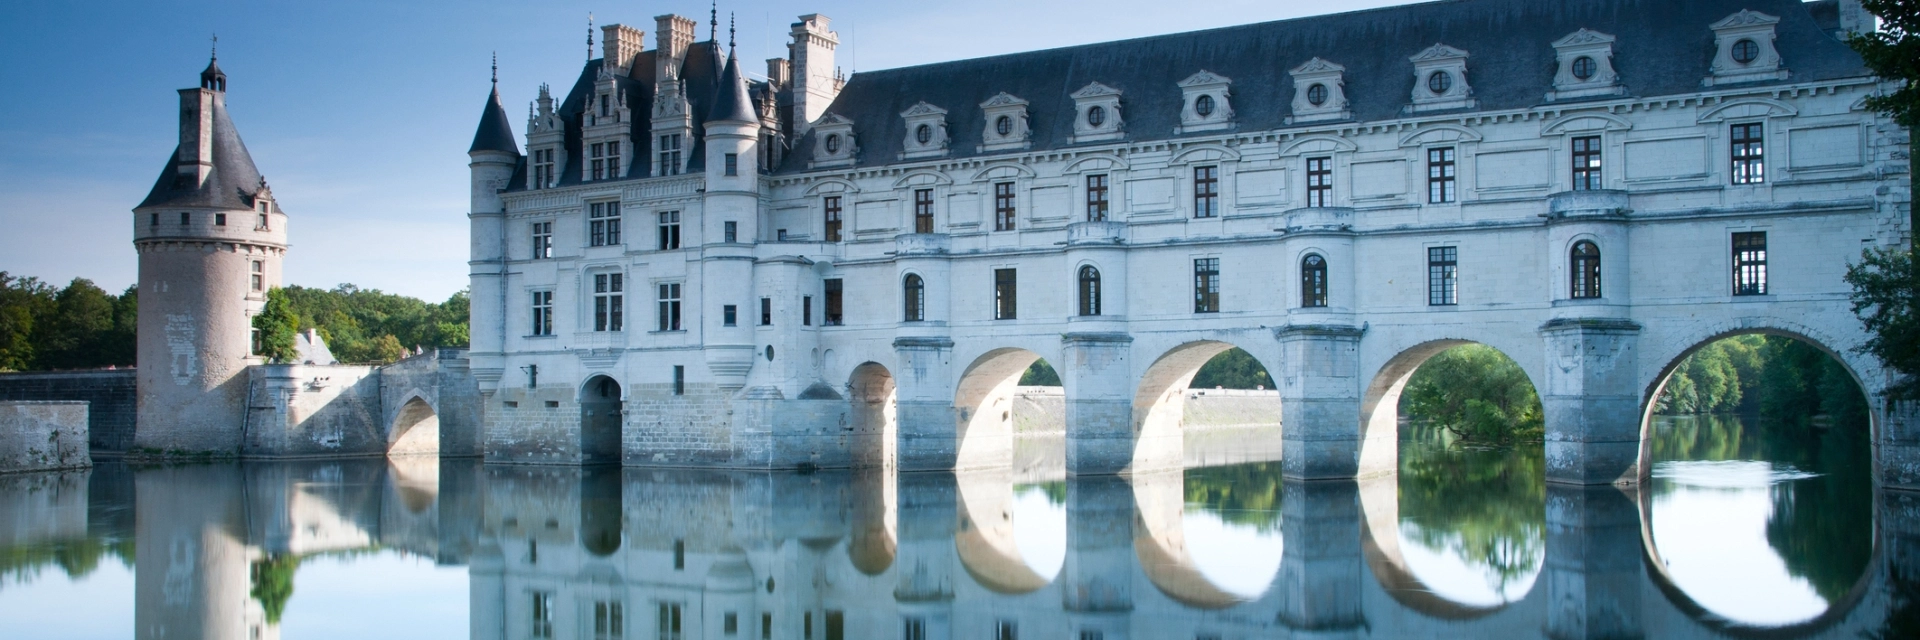 Les châteaux de la Loire en Touraine …Laissez-vous émerveiller !